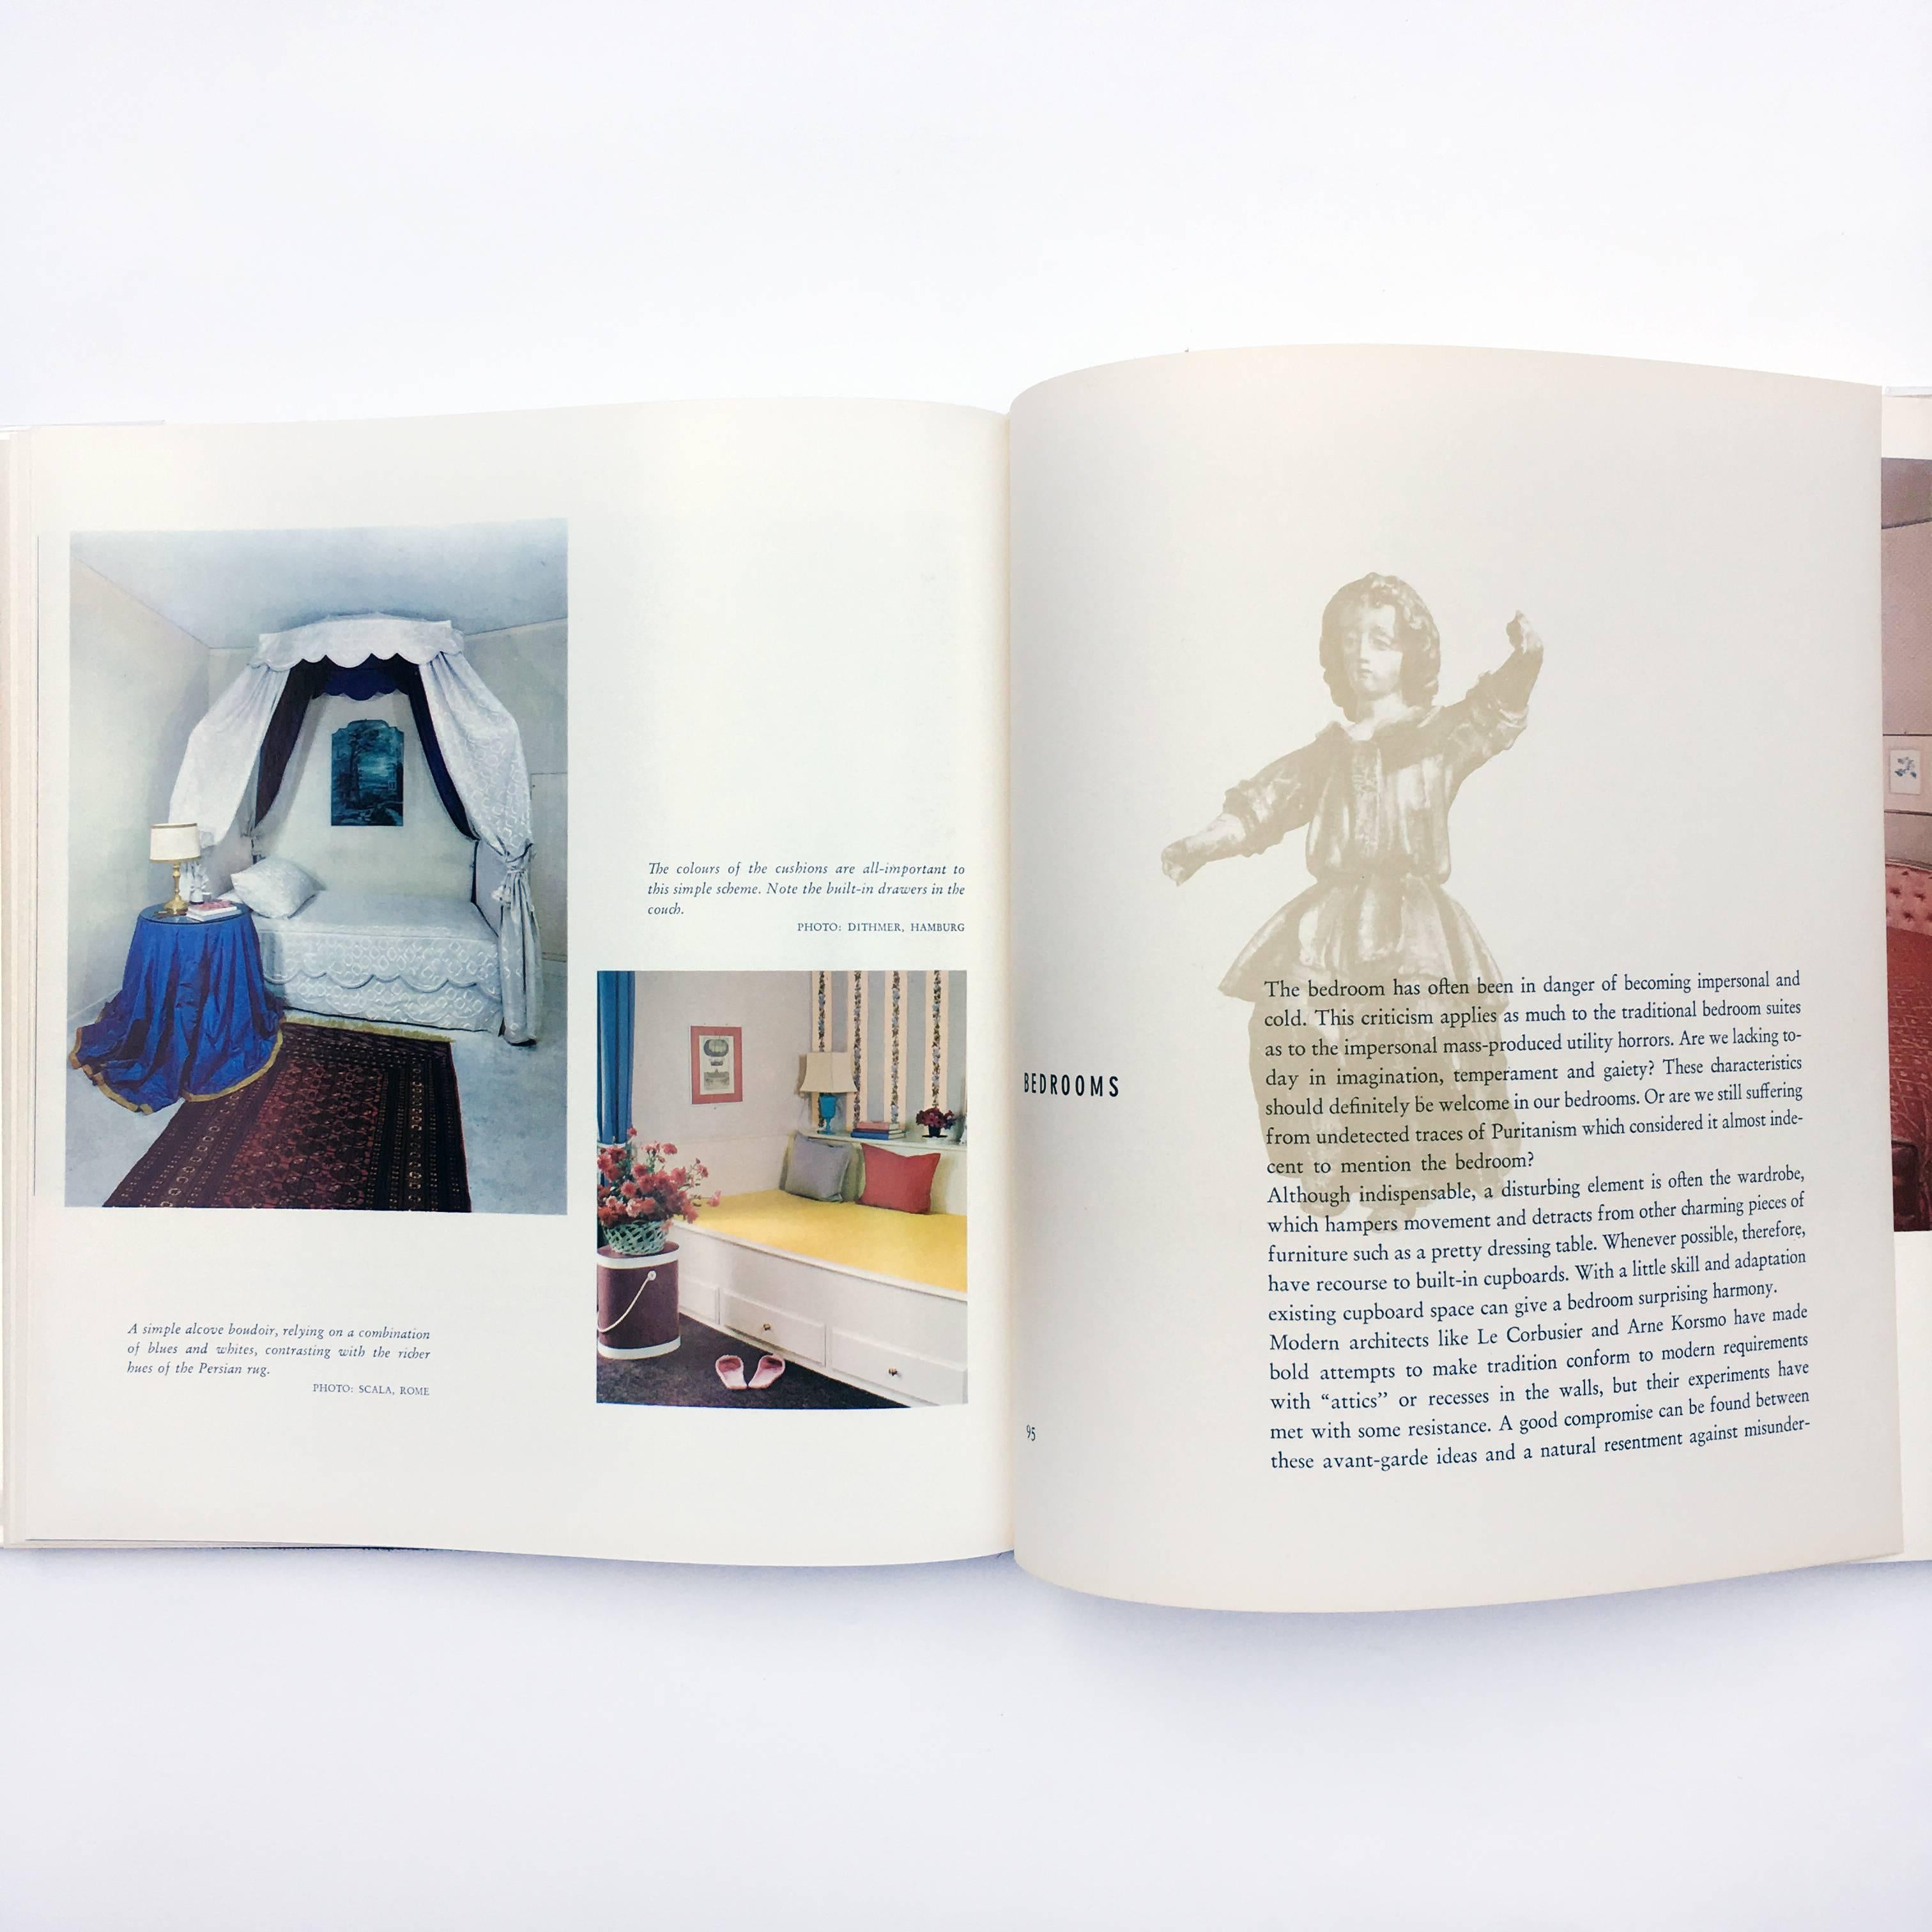 Publié par The Architectural Press Co. 1ère édition, 1960

Ce beau livre est une étude complète des idées européennes modernes sur la décoration intérieure.
Plus de 220 photographies prises spécialement pour ce volume ont été rassemblées pour